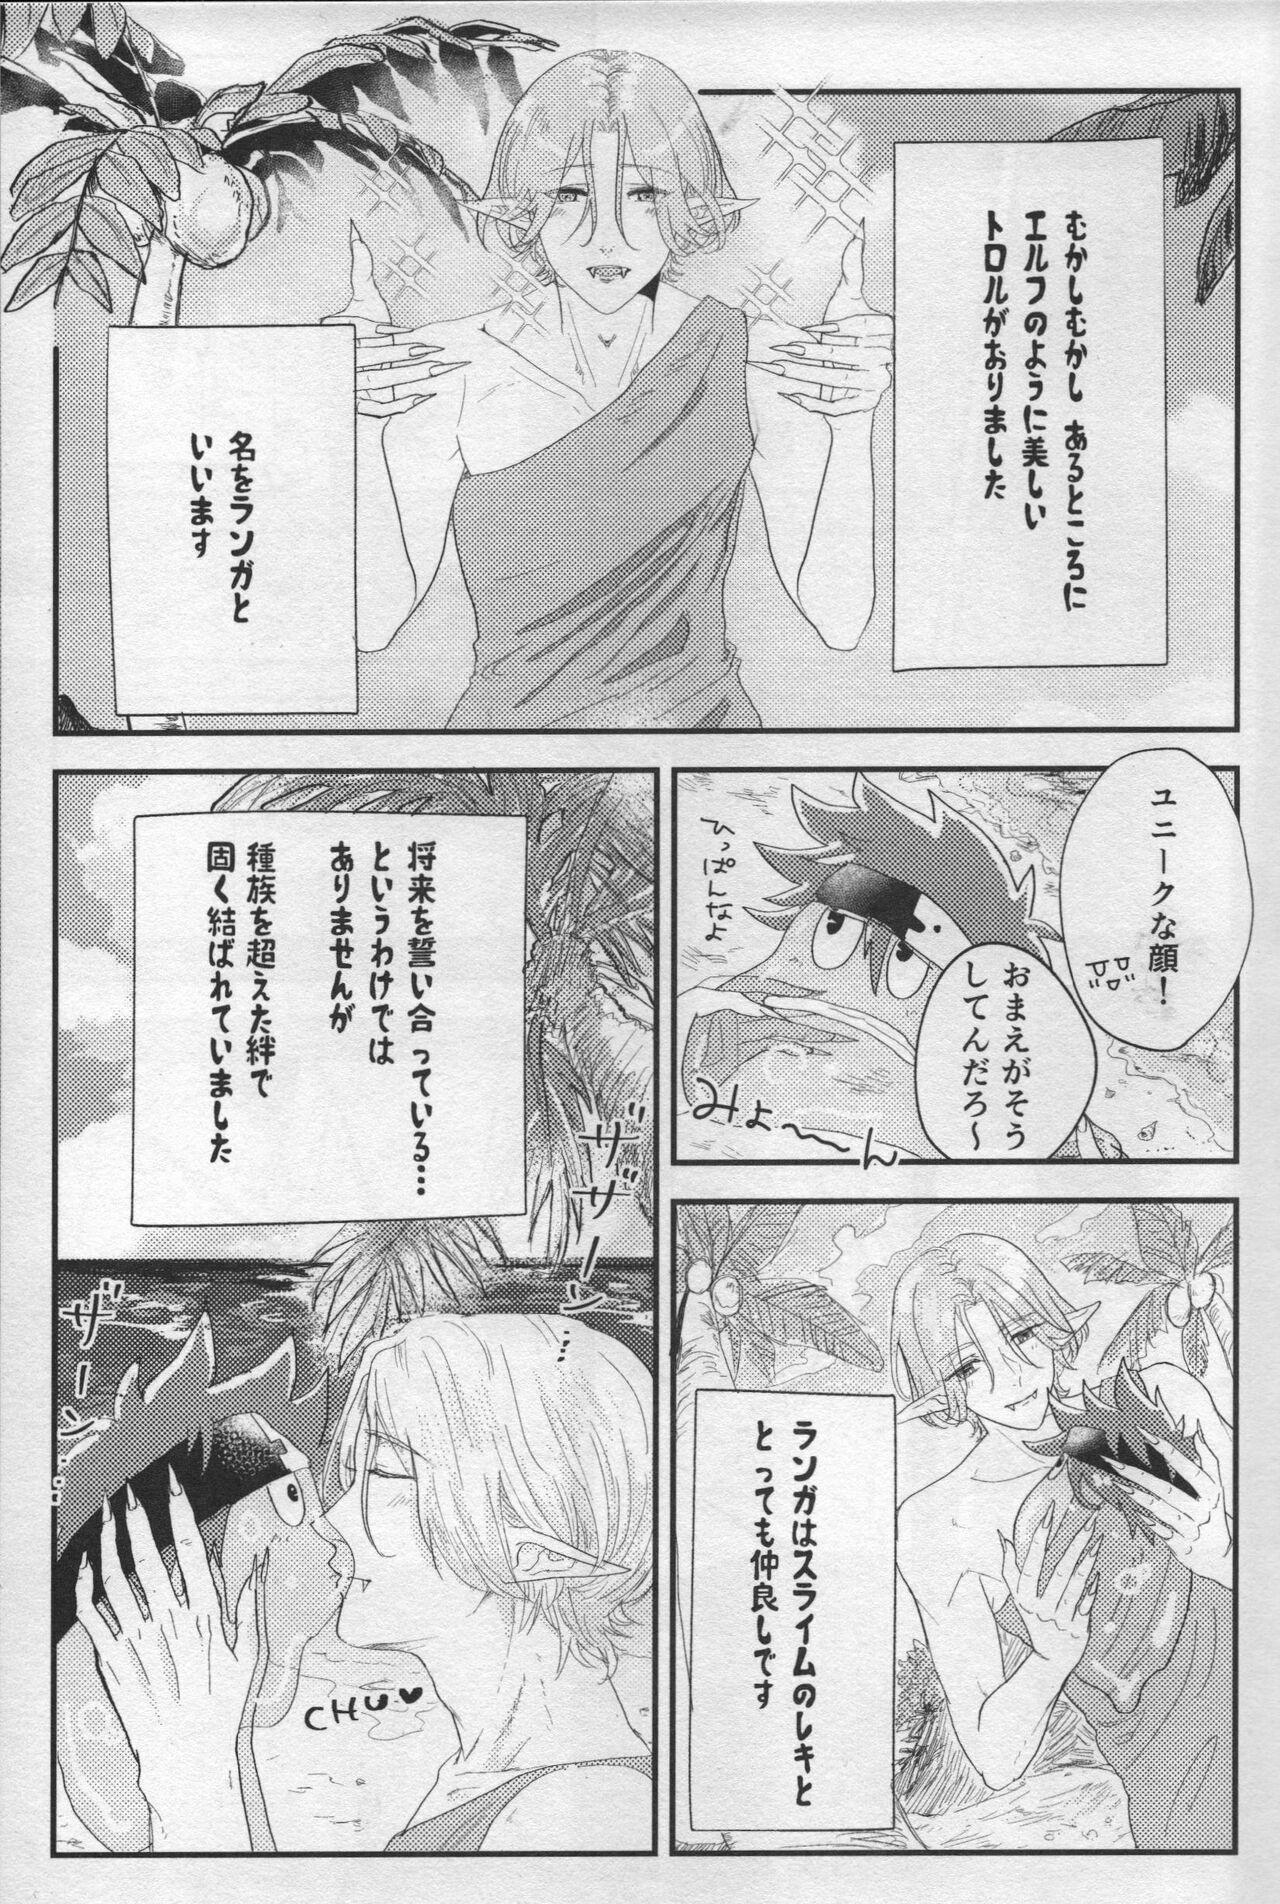 Puba Sakuya wa o tanoshimideshita ne - Sk8 the infinity Blows - Page 5